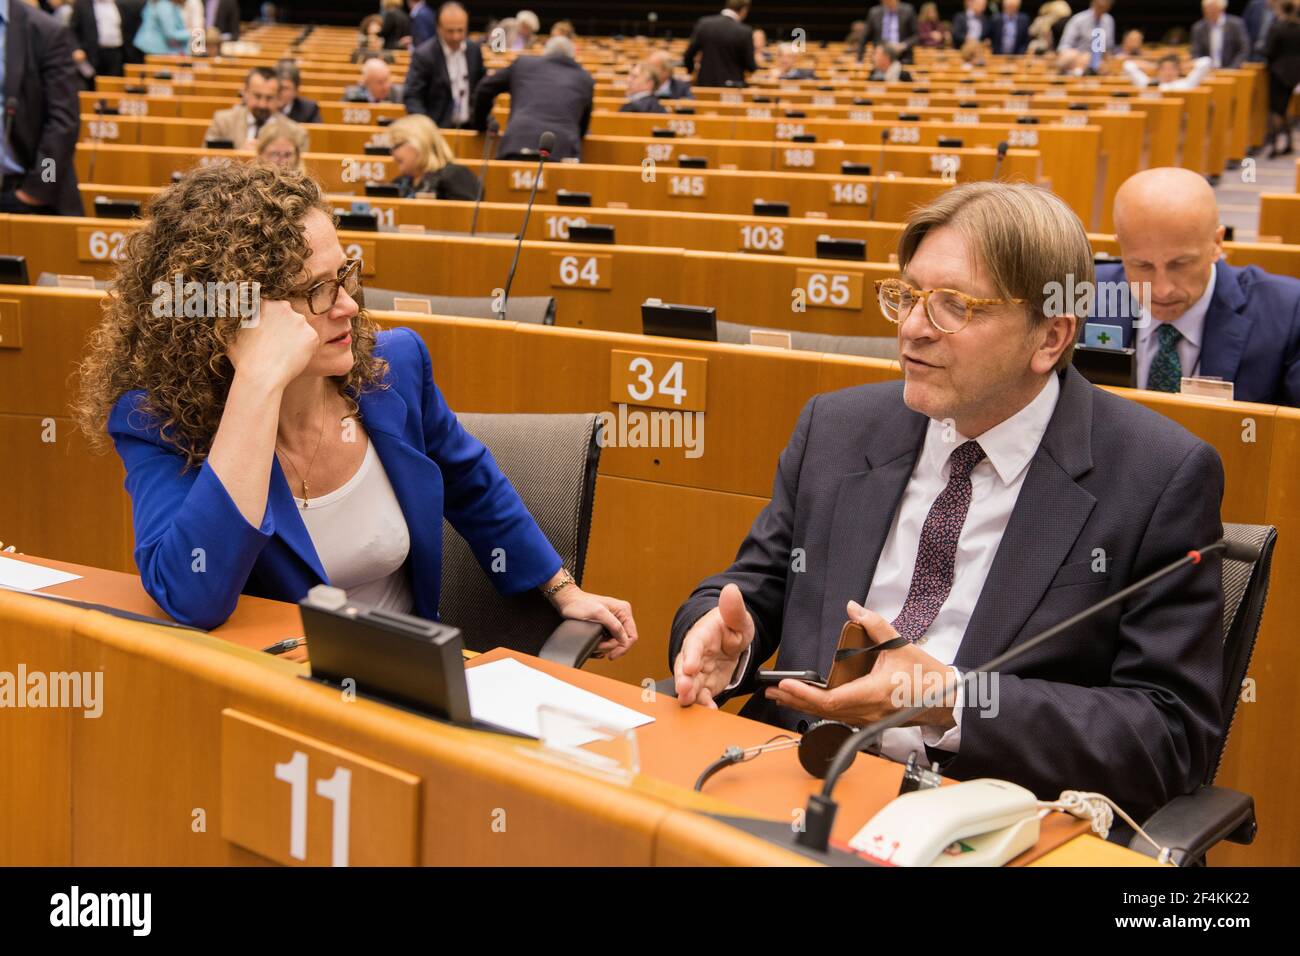 Brüssel, Belgien. Mitglied des Europäischen Parlaments, Frau Sofia in 't Veld und Herr Guy Verhofstadt bei einem Gespräch vor einer Plenarsitzung. Stockfoto